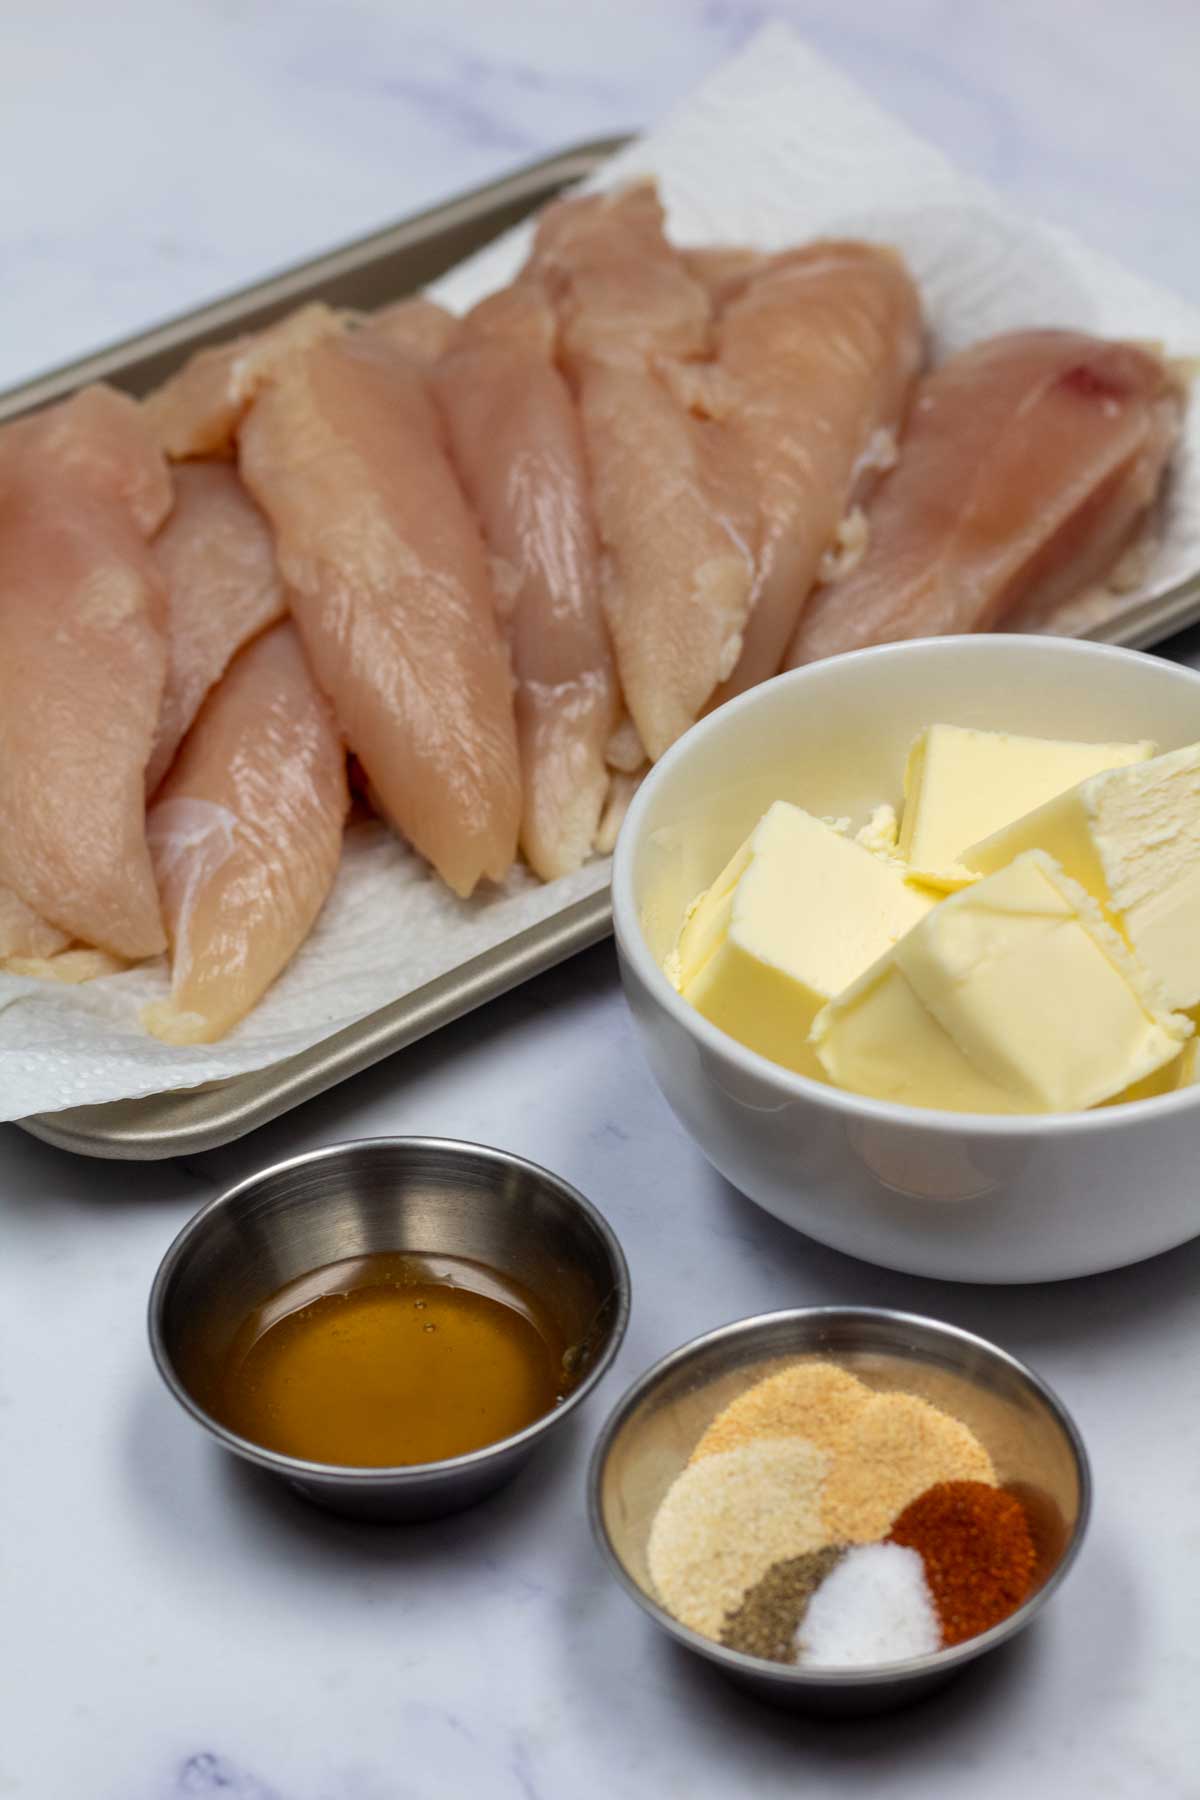 Imagen alta que muestra los ingredientes para filetes de pollo al horno.